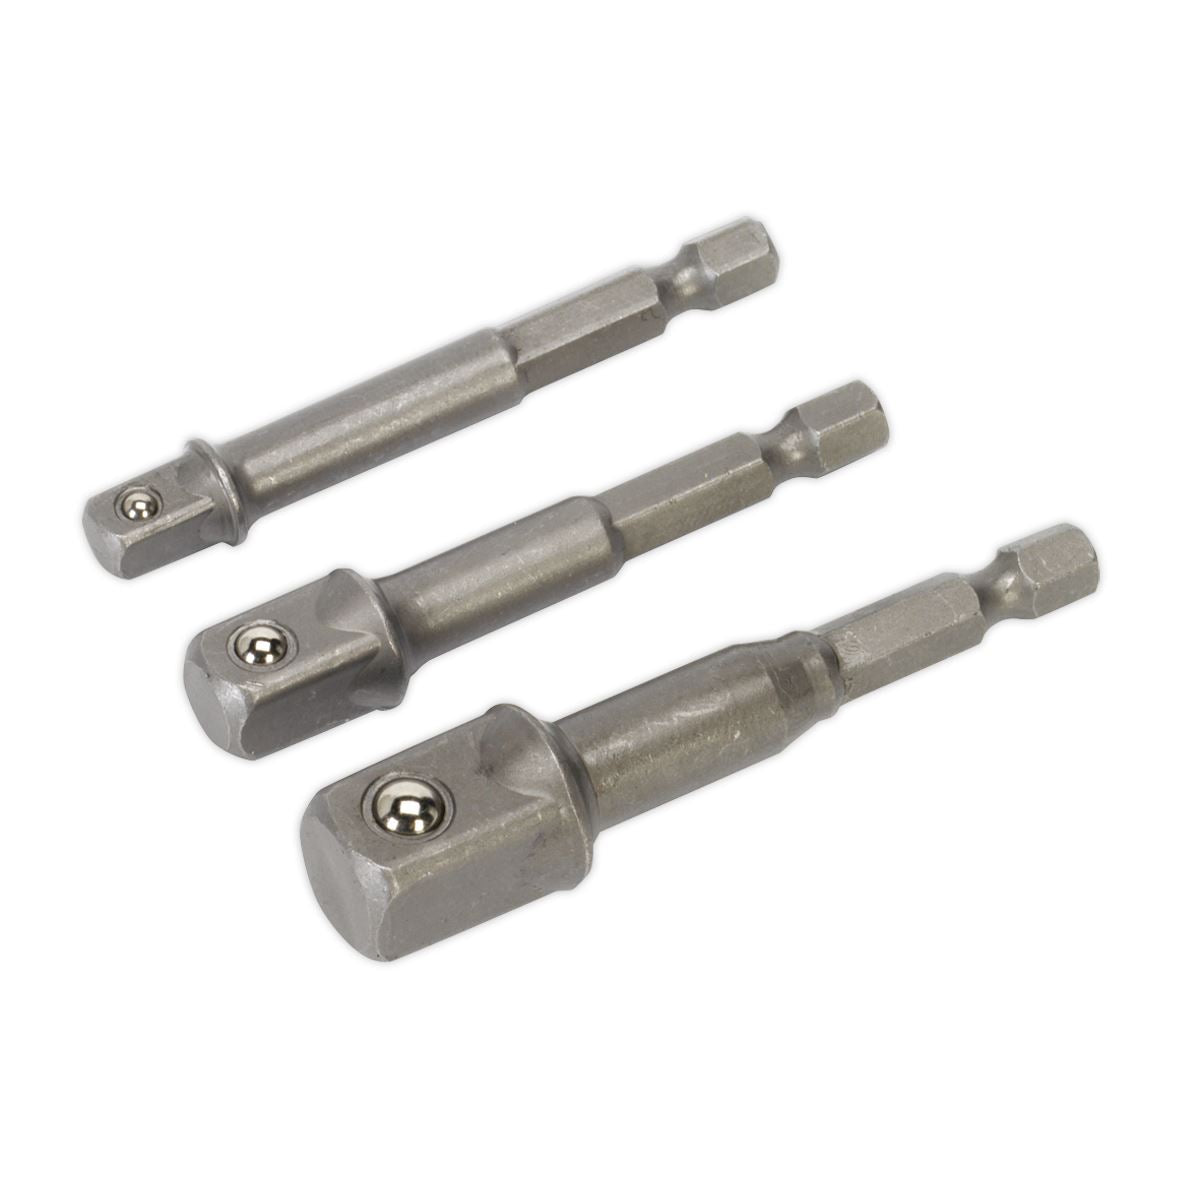 Sealey 3 Piece Power Tool Socket Adaptor Set 1/4" 3/8" 1/2" Drill Converter